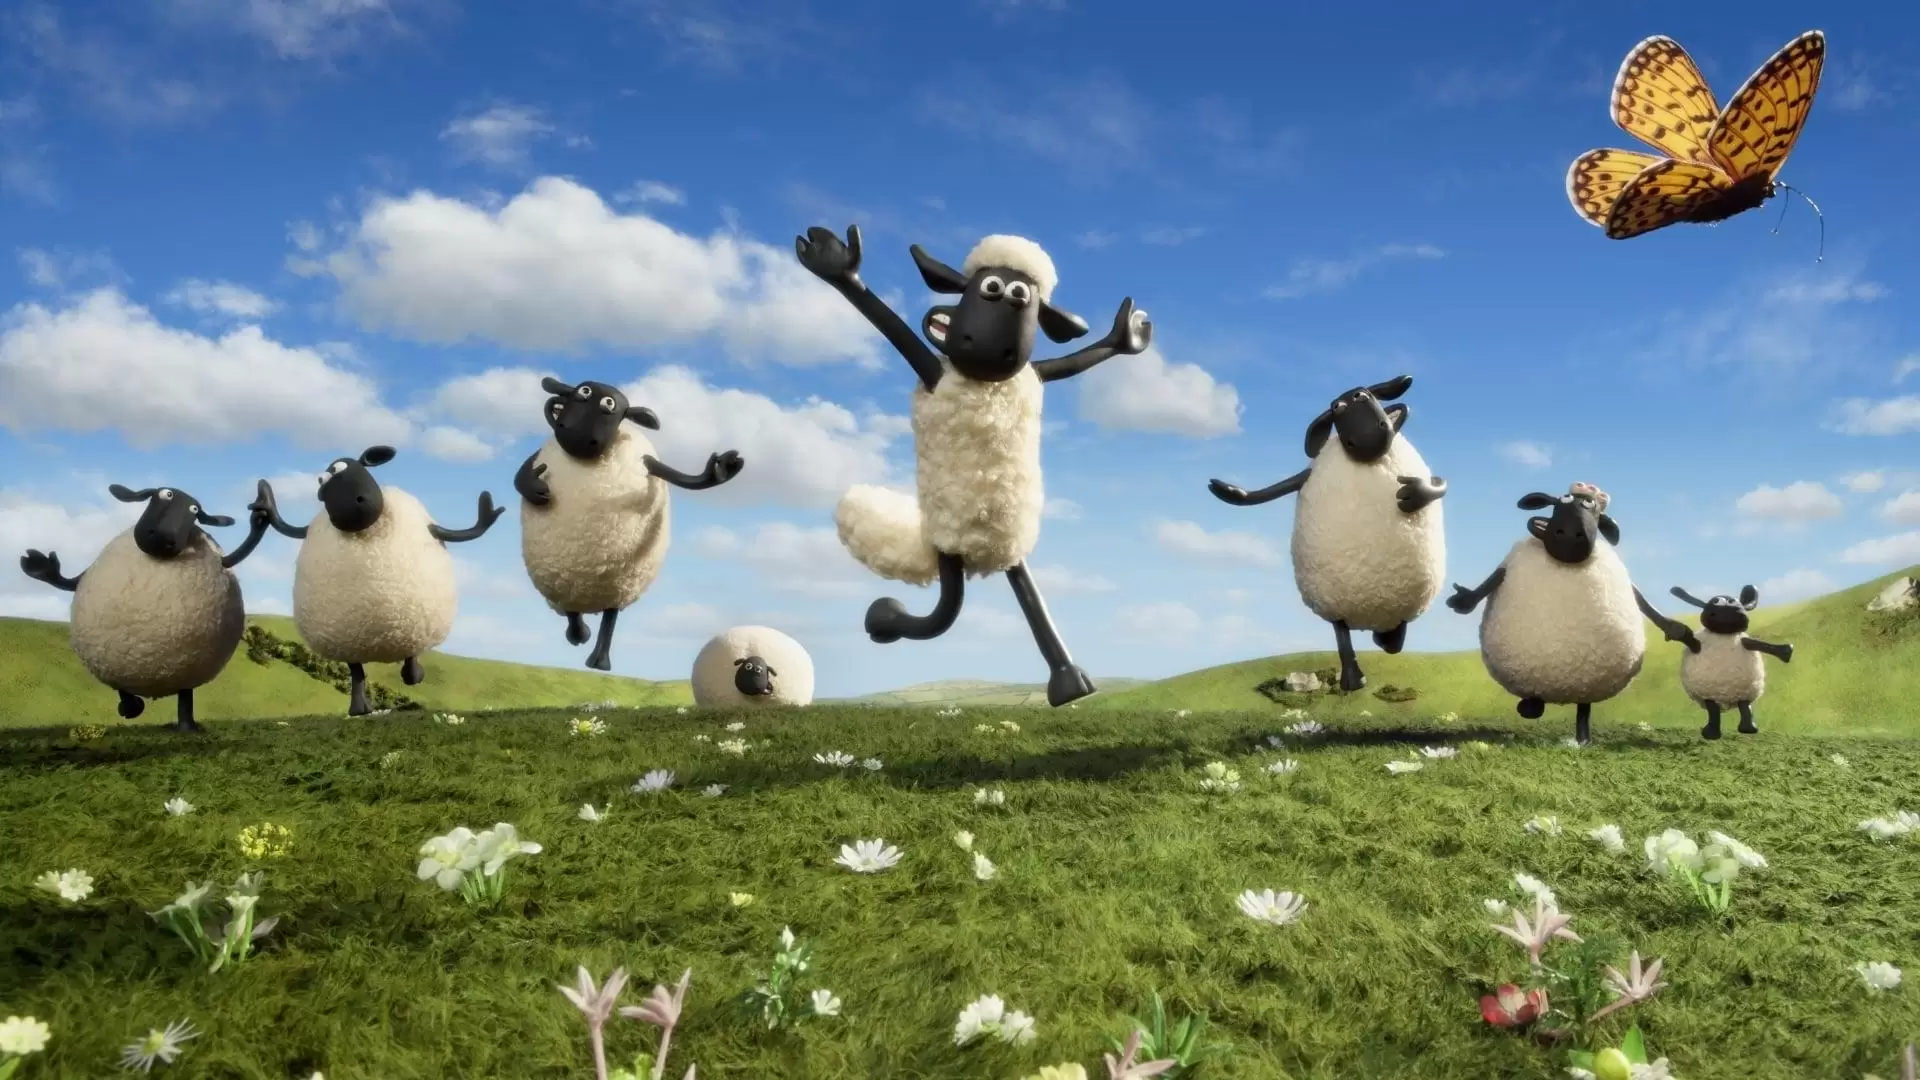 دانلود انیمیشن Shaun the Sheep 2007 (گوسفندی به نام شاون) با تماشای آنلاین